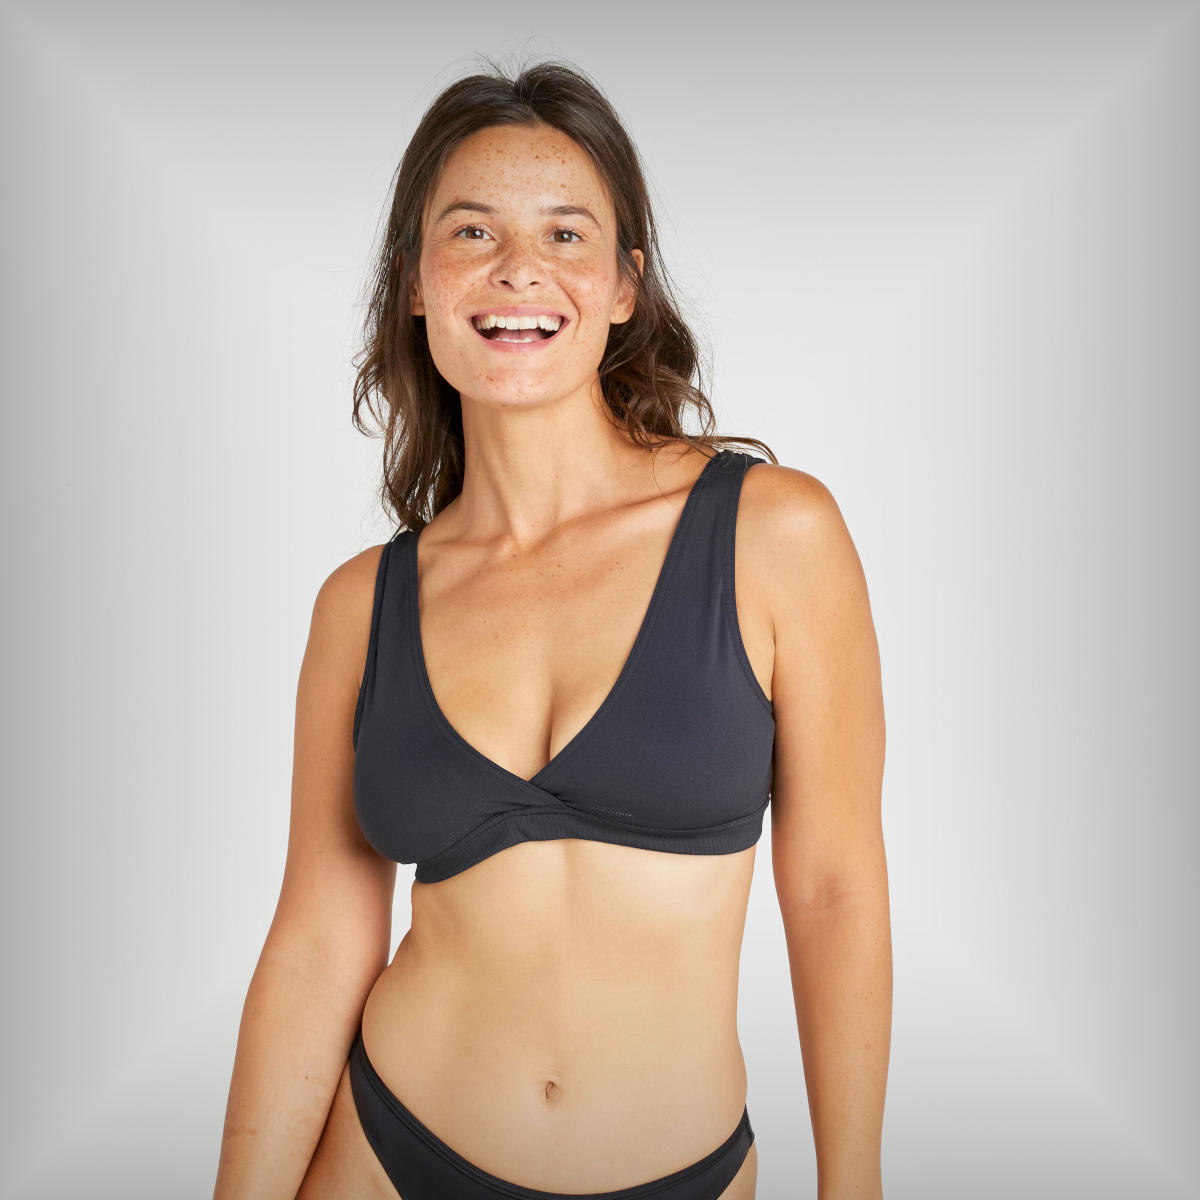 Decathlon presenta el top de bikini 6.50 diseñado para adaptarse hasta 50 tallas diferentes de pecho